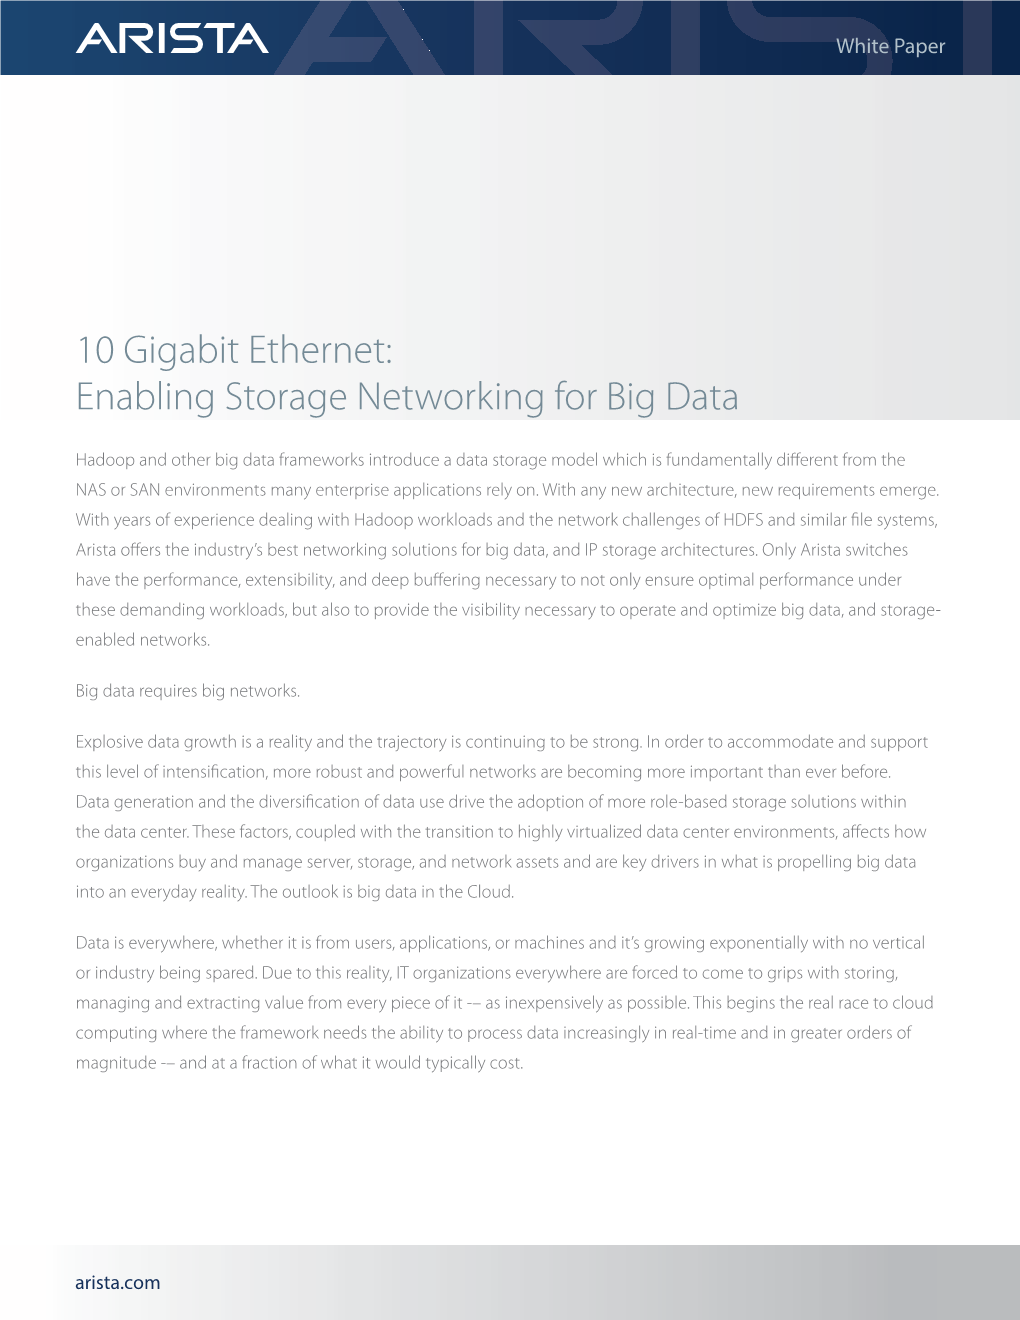 10 Gigabit Ethernet: Enabling Storage Networking for Big Data